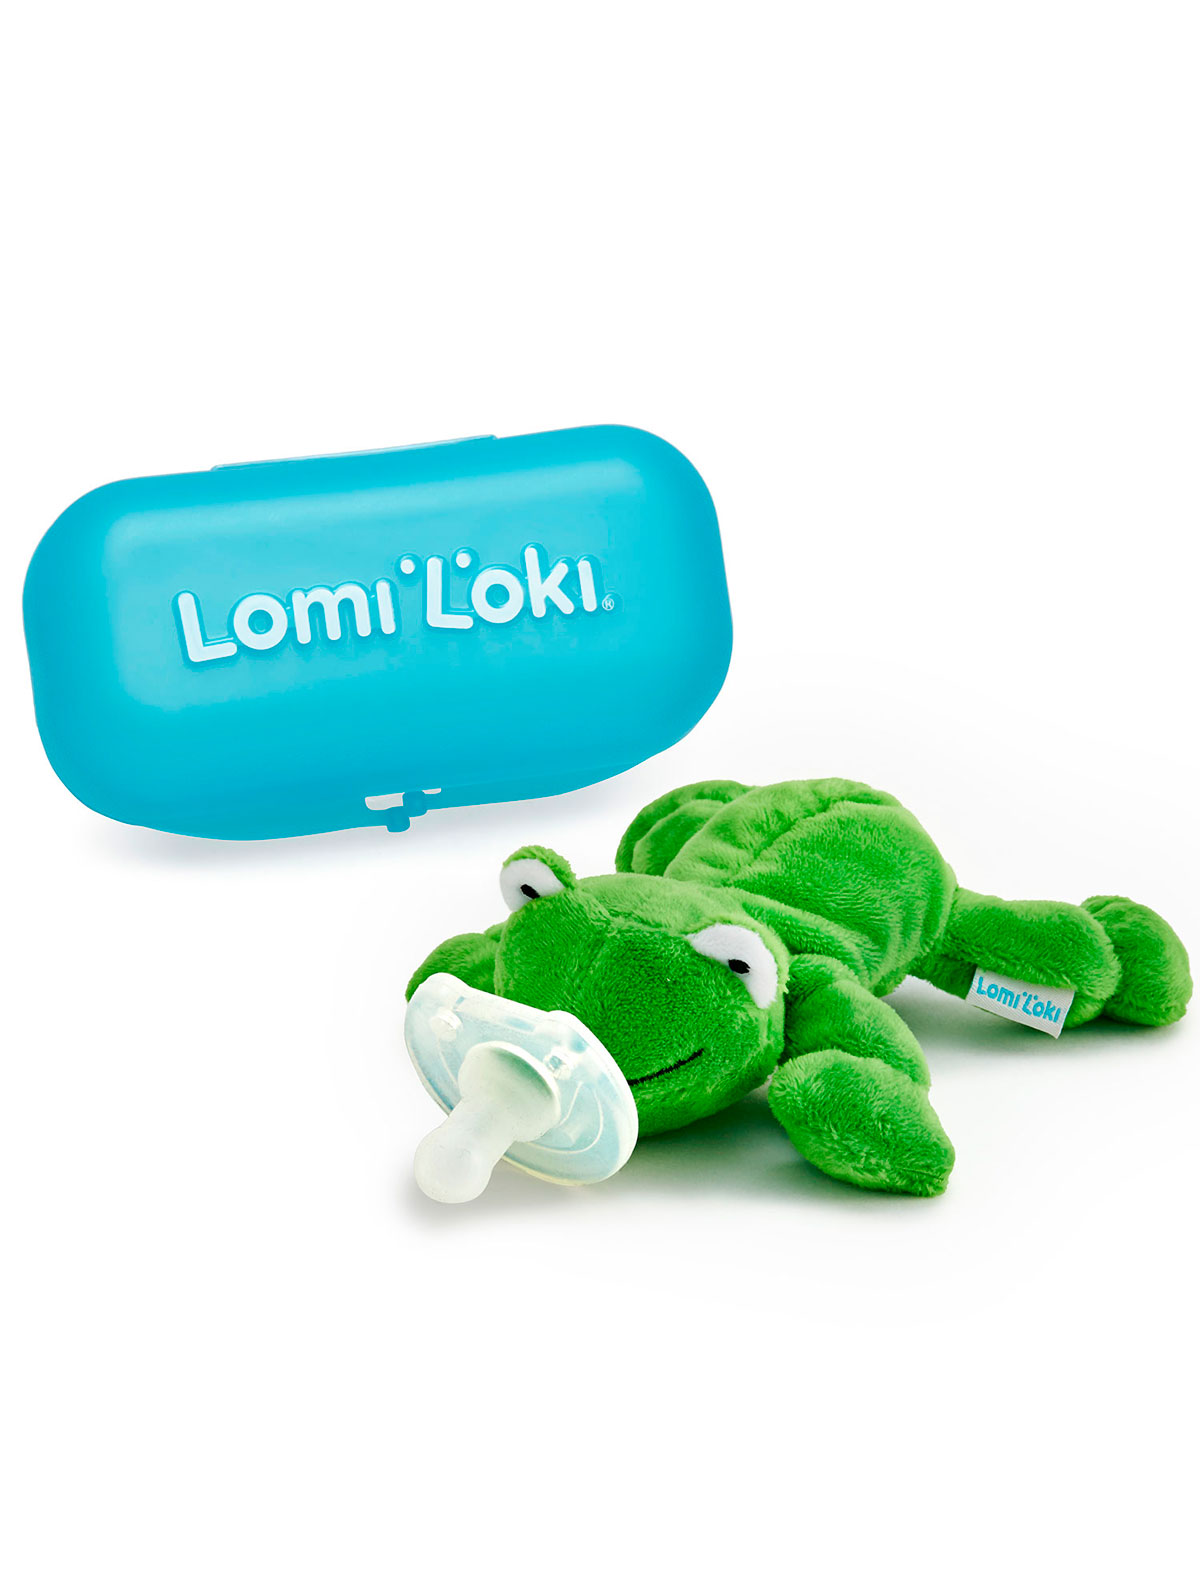 Соска Lomi Loki кто чем поёт